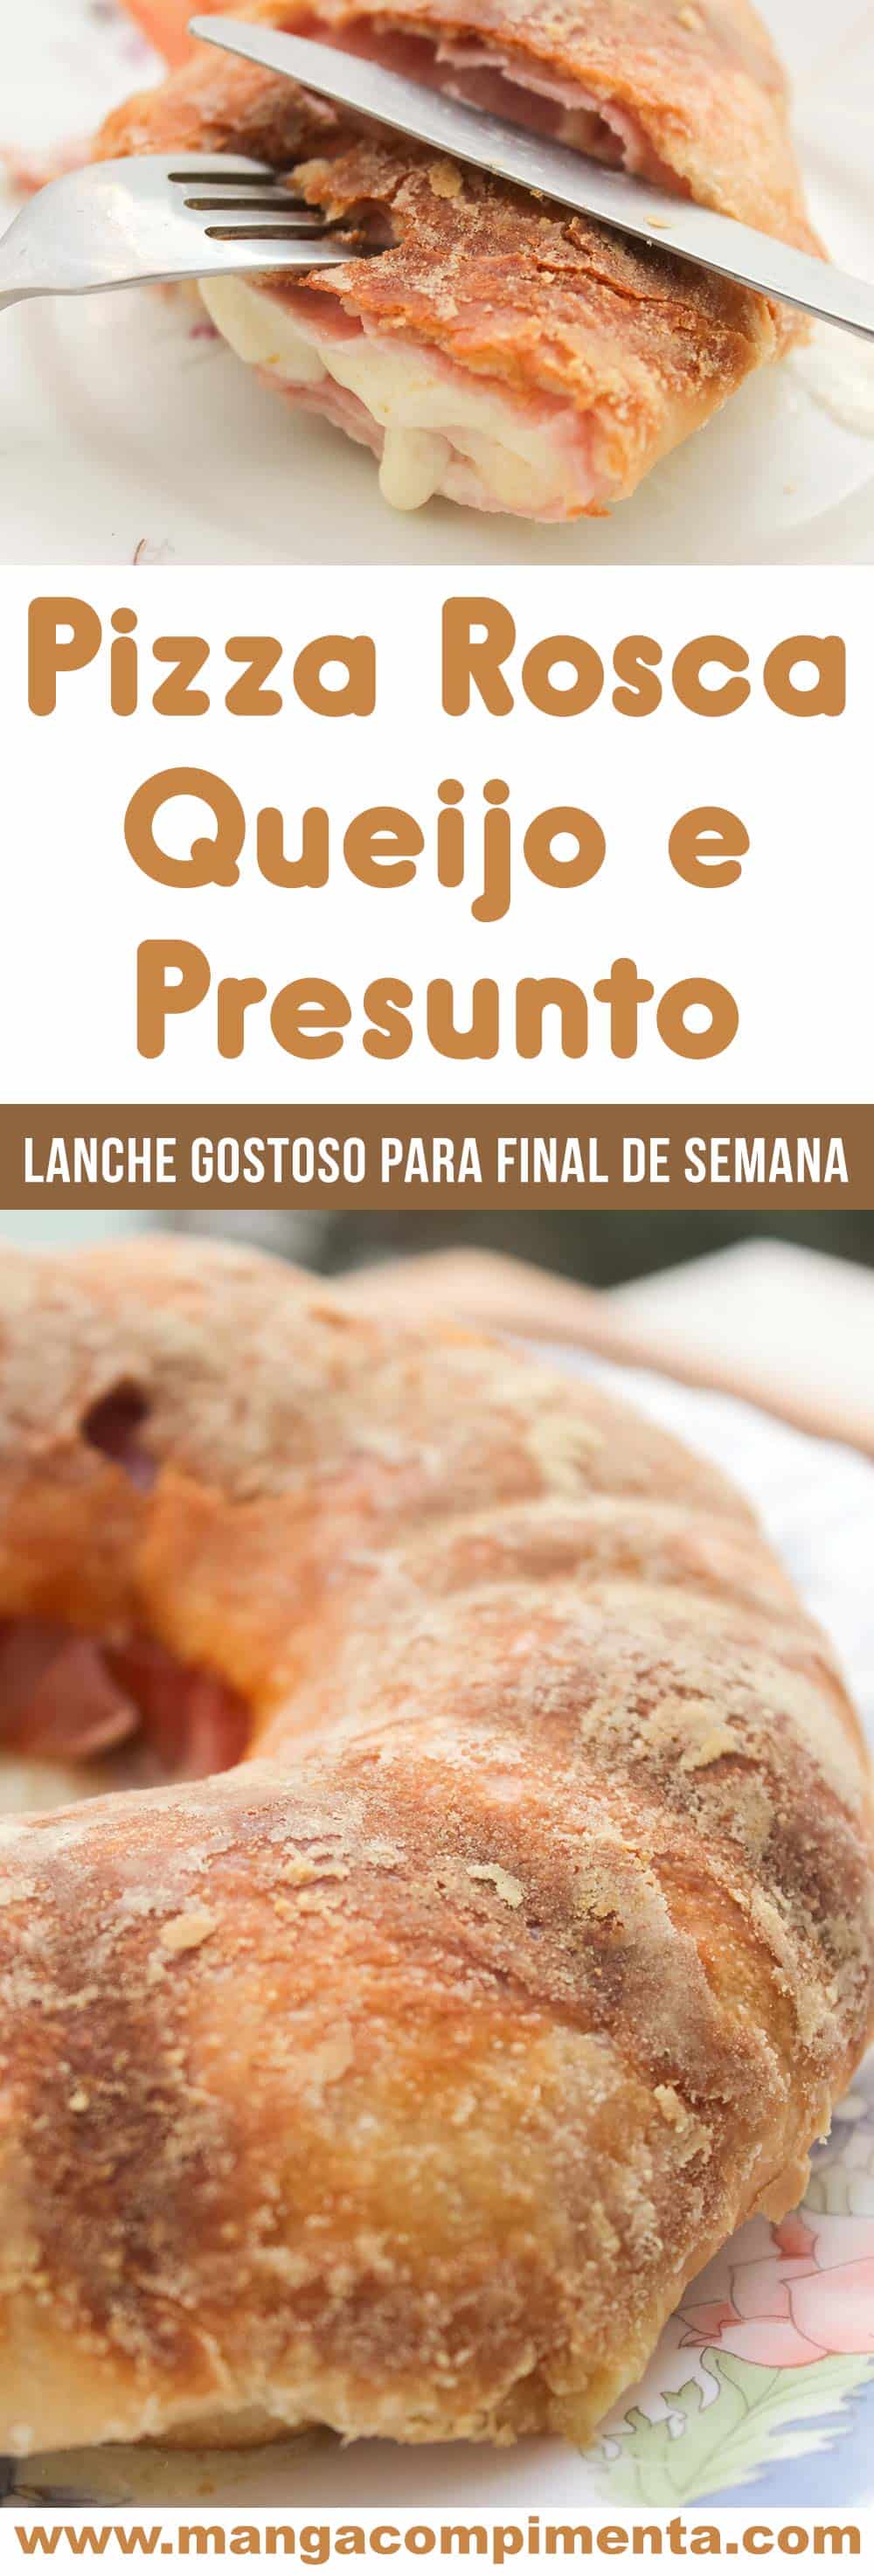 Pizza Rosca Presunto e Queijo - para um lanche caseiro em família no final de semana!